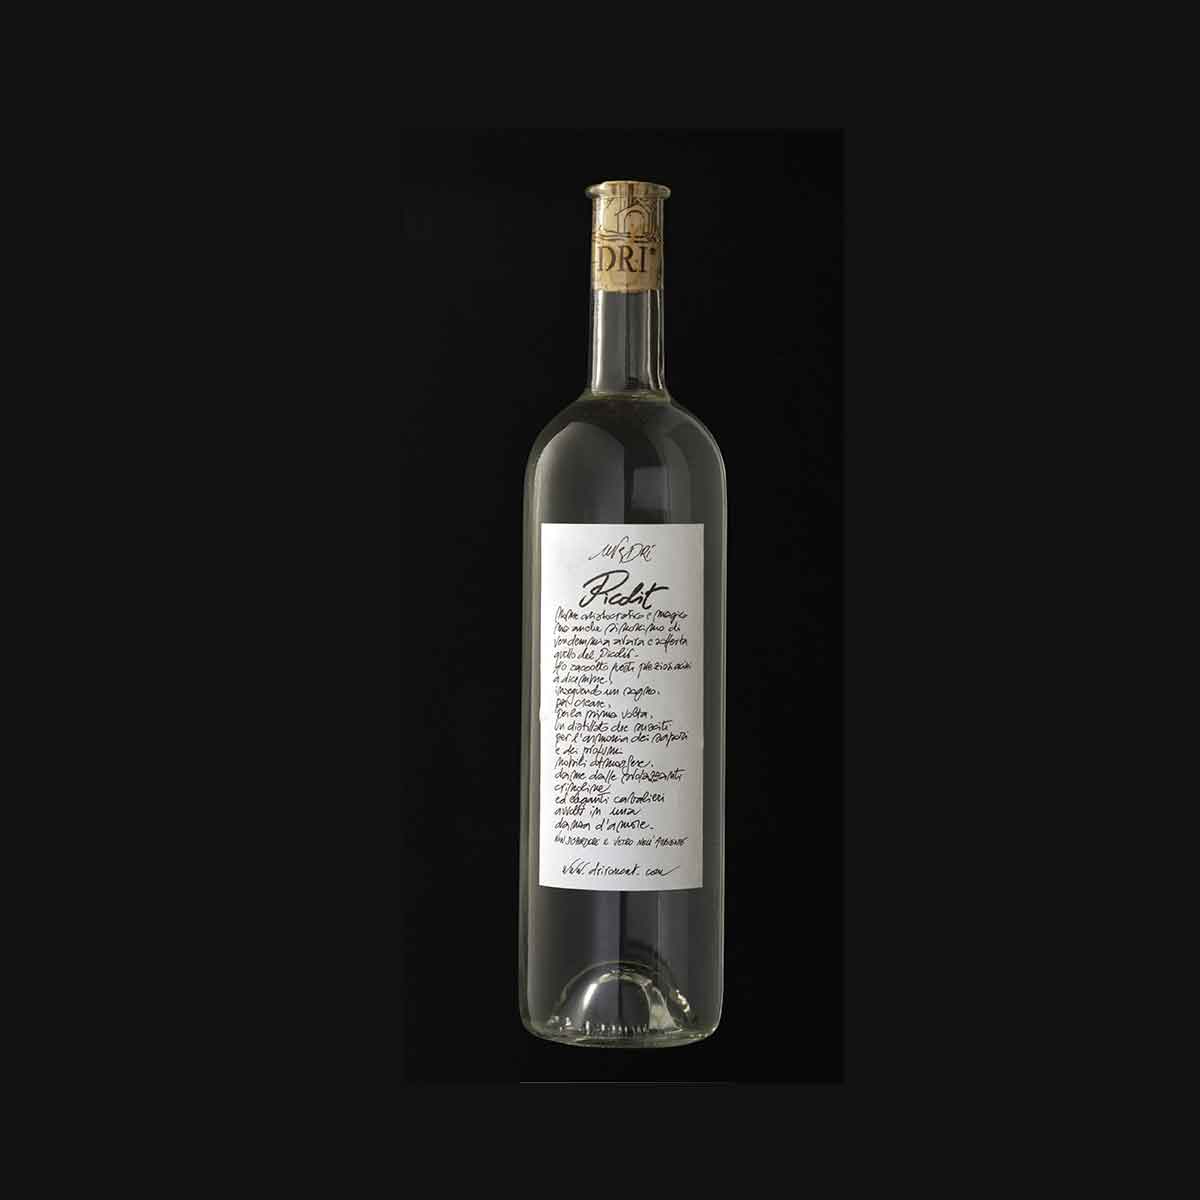 Uve Dri – Distillato di Picolit, Acquisto grappe e distillati online